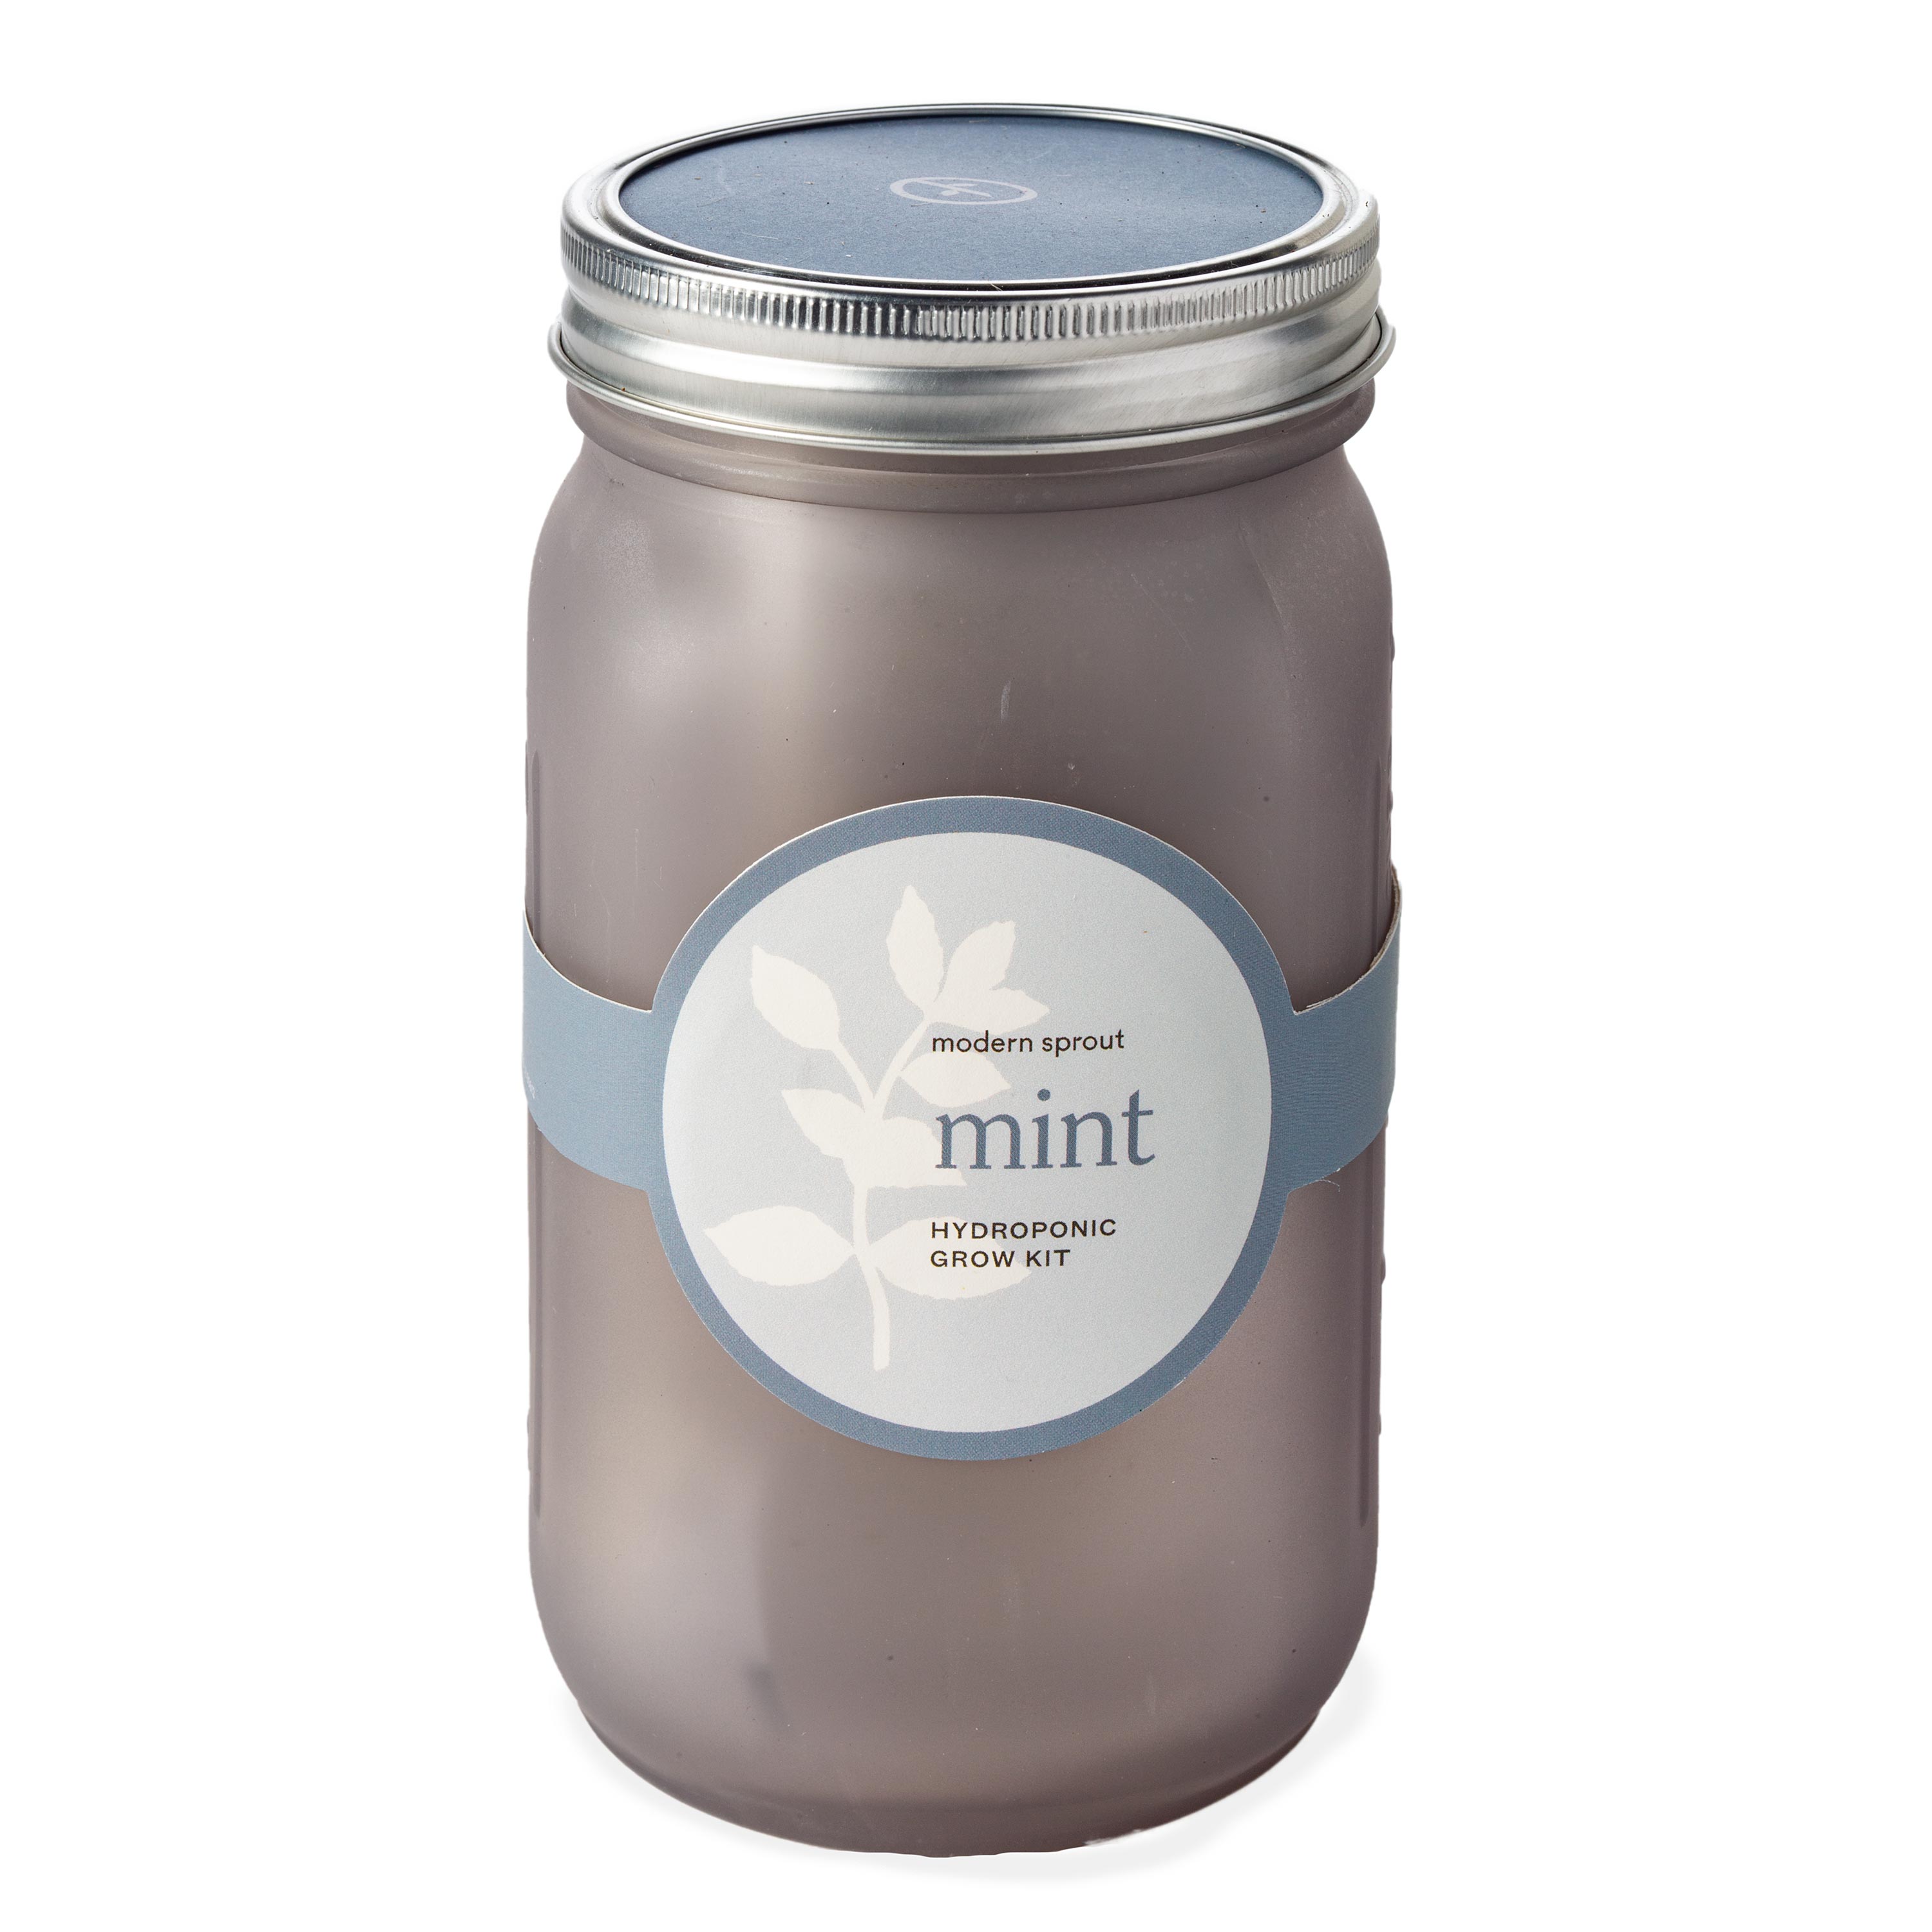 Herb Jar Growing Kits - Mint